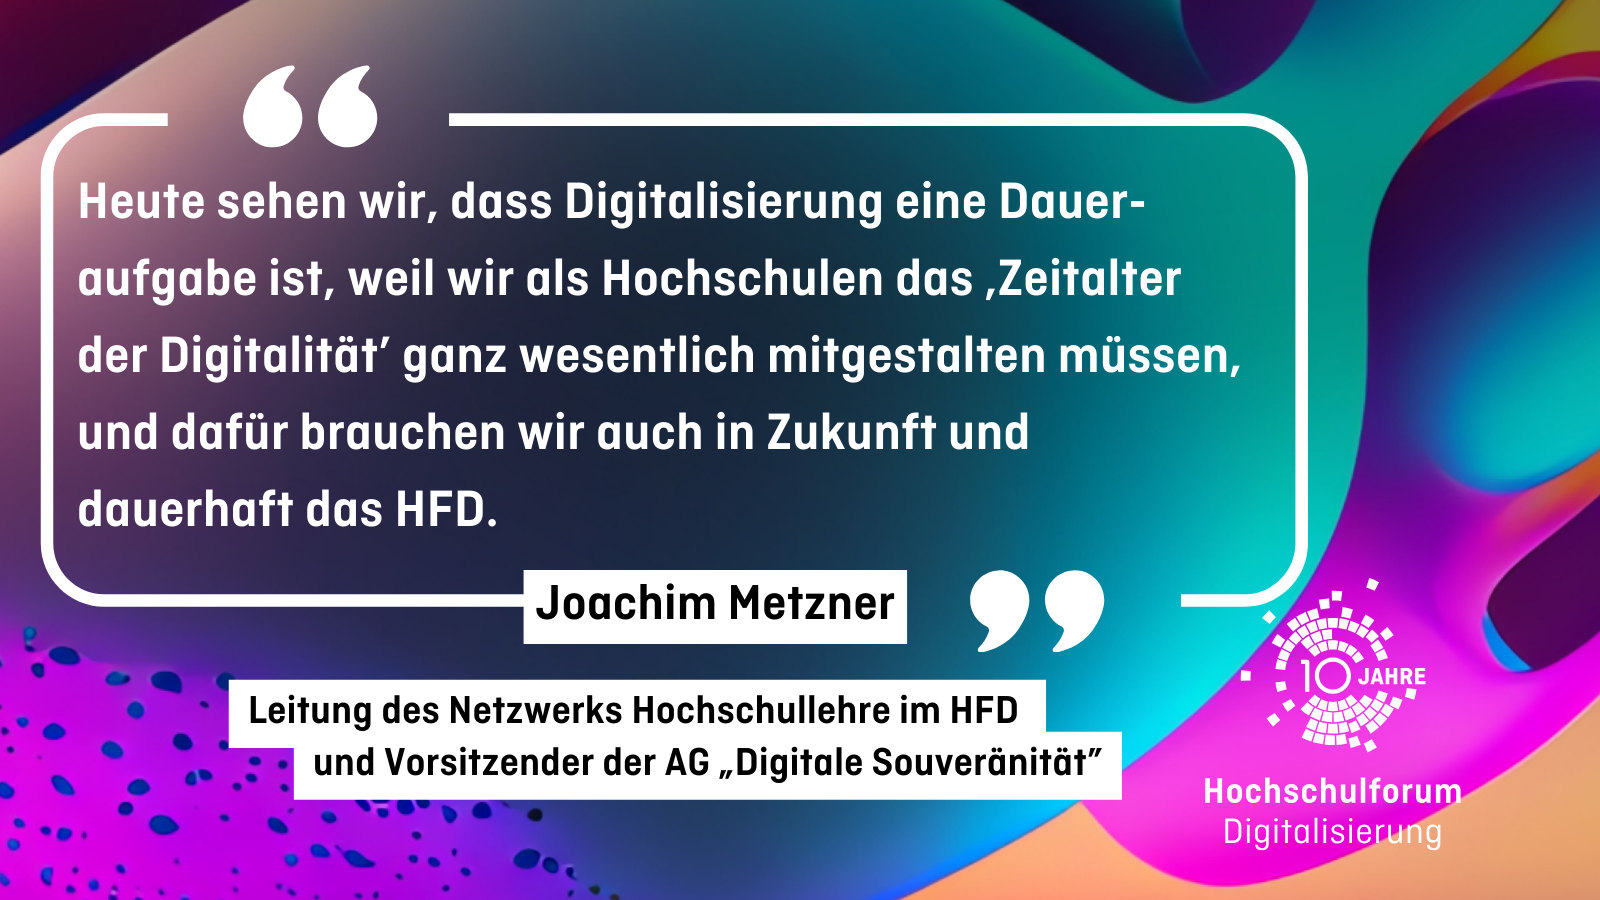 "Heute sehen wir, dass Digitalisierung eine Daueraufgabe ist, weil wir als Hochschulen das ‚Zeitalter der Digitalität’ ganz wesentlich mitgestalten müssen, und dafür brauchen wir auch in Zukunft und dauerhaft das HFD." Joachim Metzner - Leitung des Netzwerks Hochschullehre im HFD und Vorsitzender der AG „Digitale Souveränität